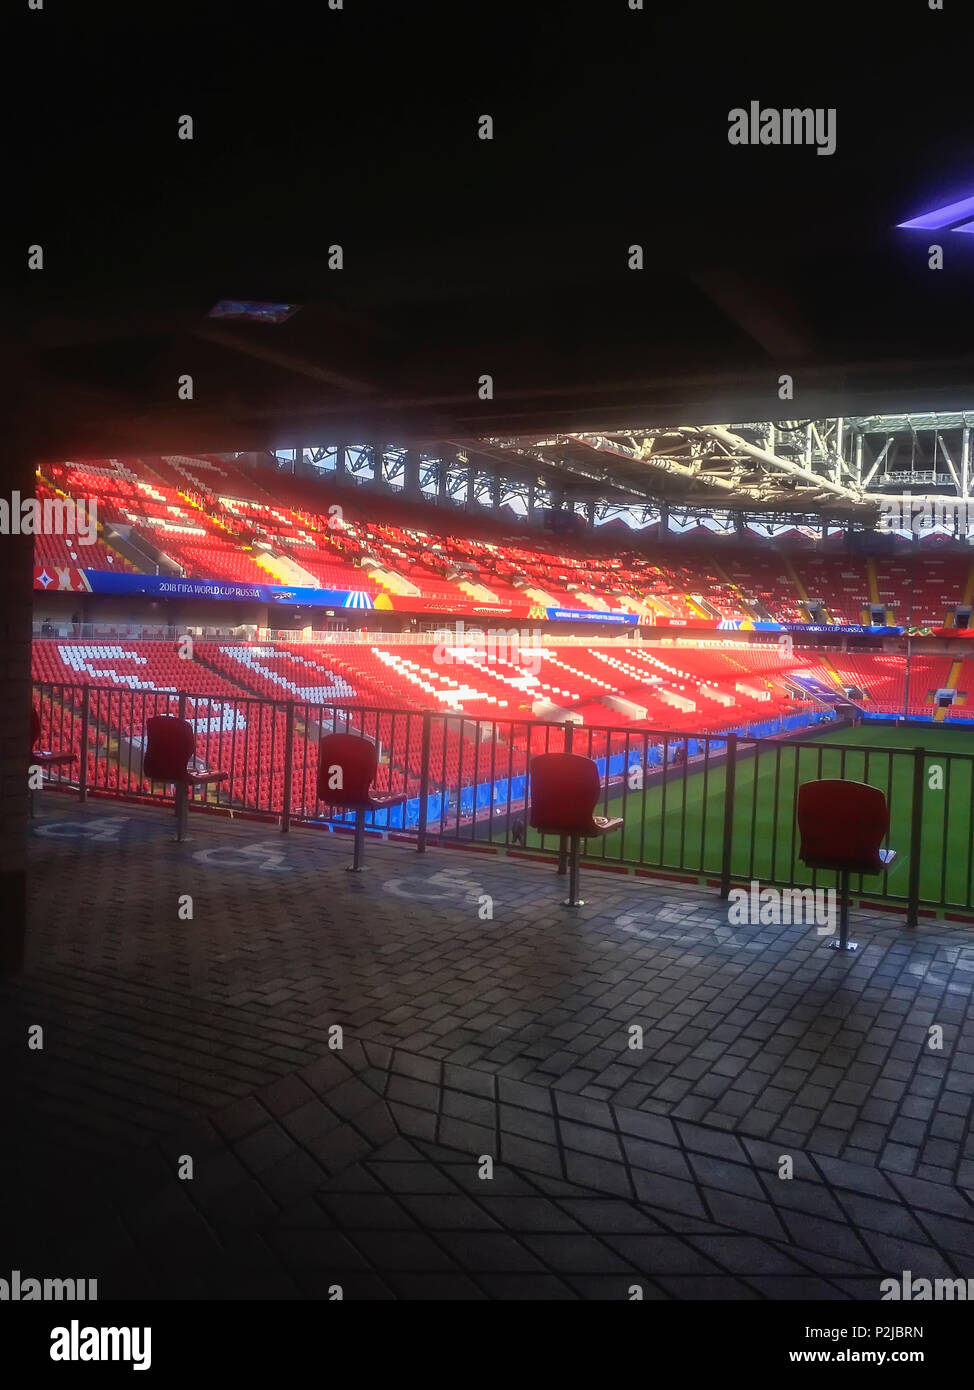 Moskau, Russland - Juni, 13, 2018: Otkritie Arena, Spartak Football Club Stadion in das Angebot der Russland für die FIFA WM 2018 enthalten Stockfoto